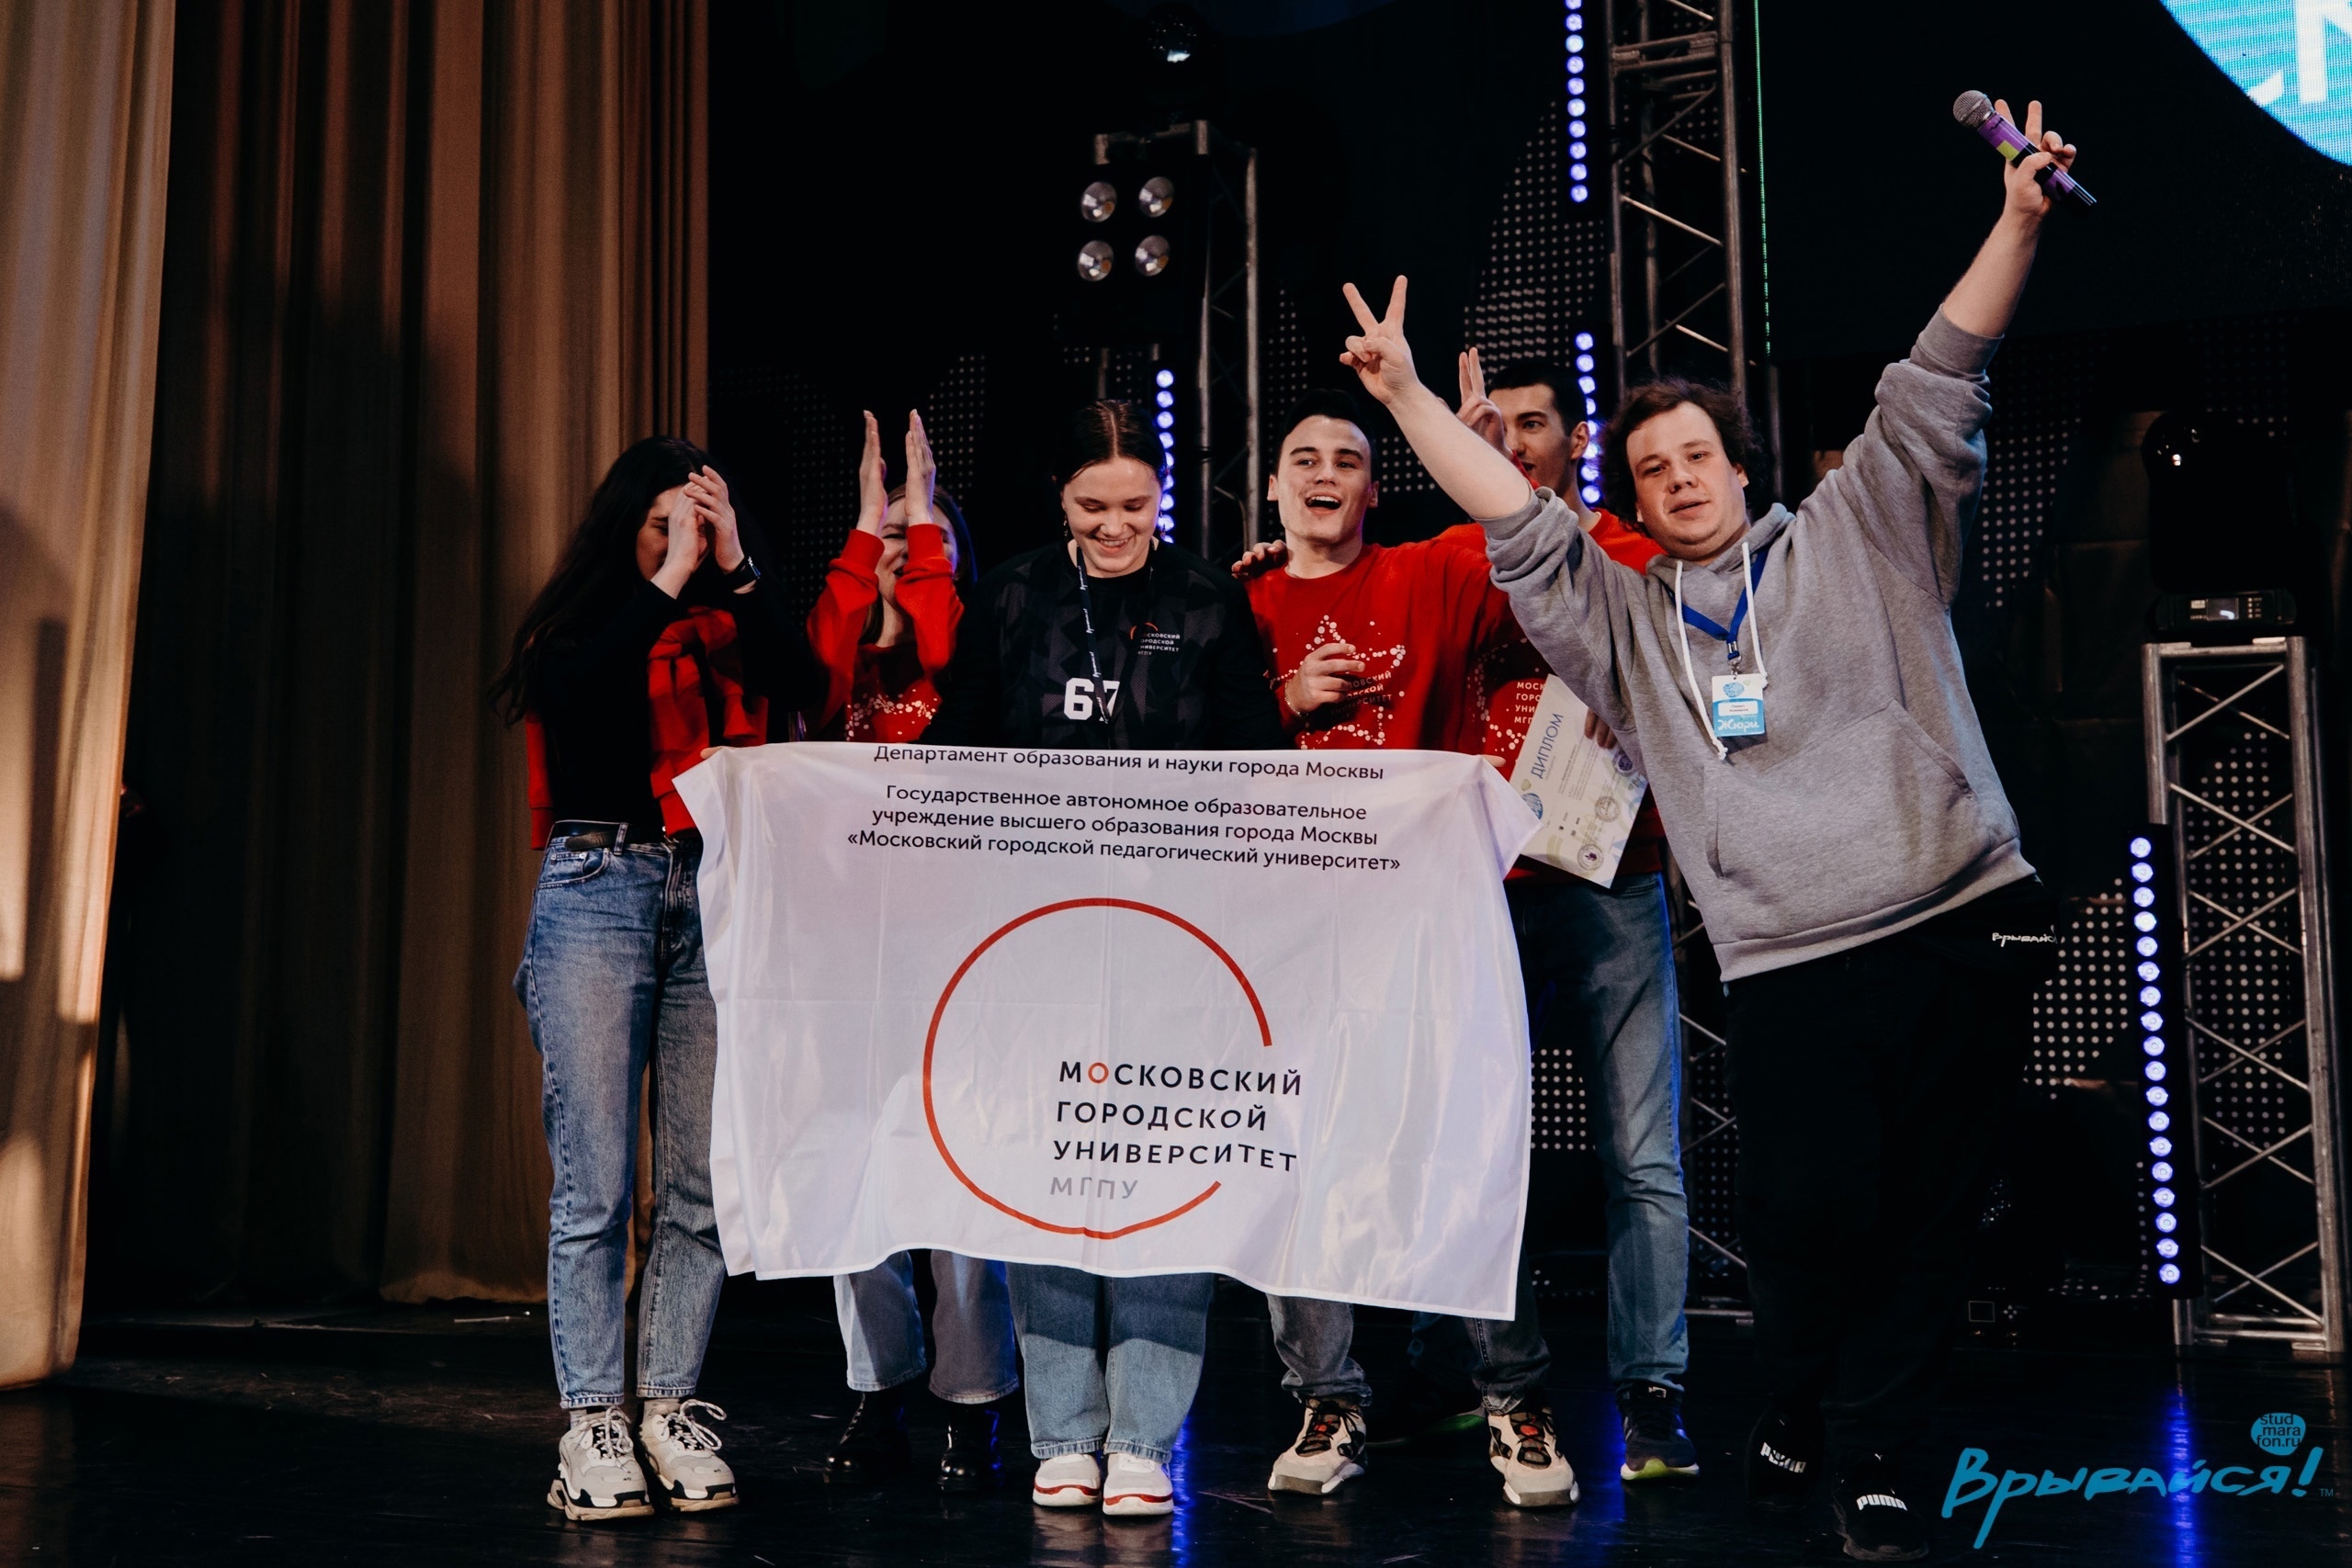 Студентки ИКИ — призёры Премьер-лиги X Всероссийского студенческого марафона